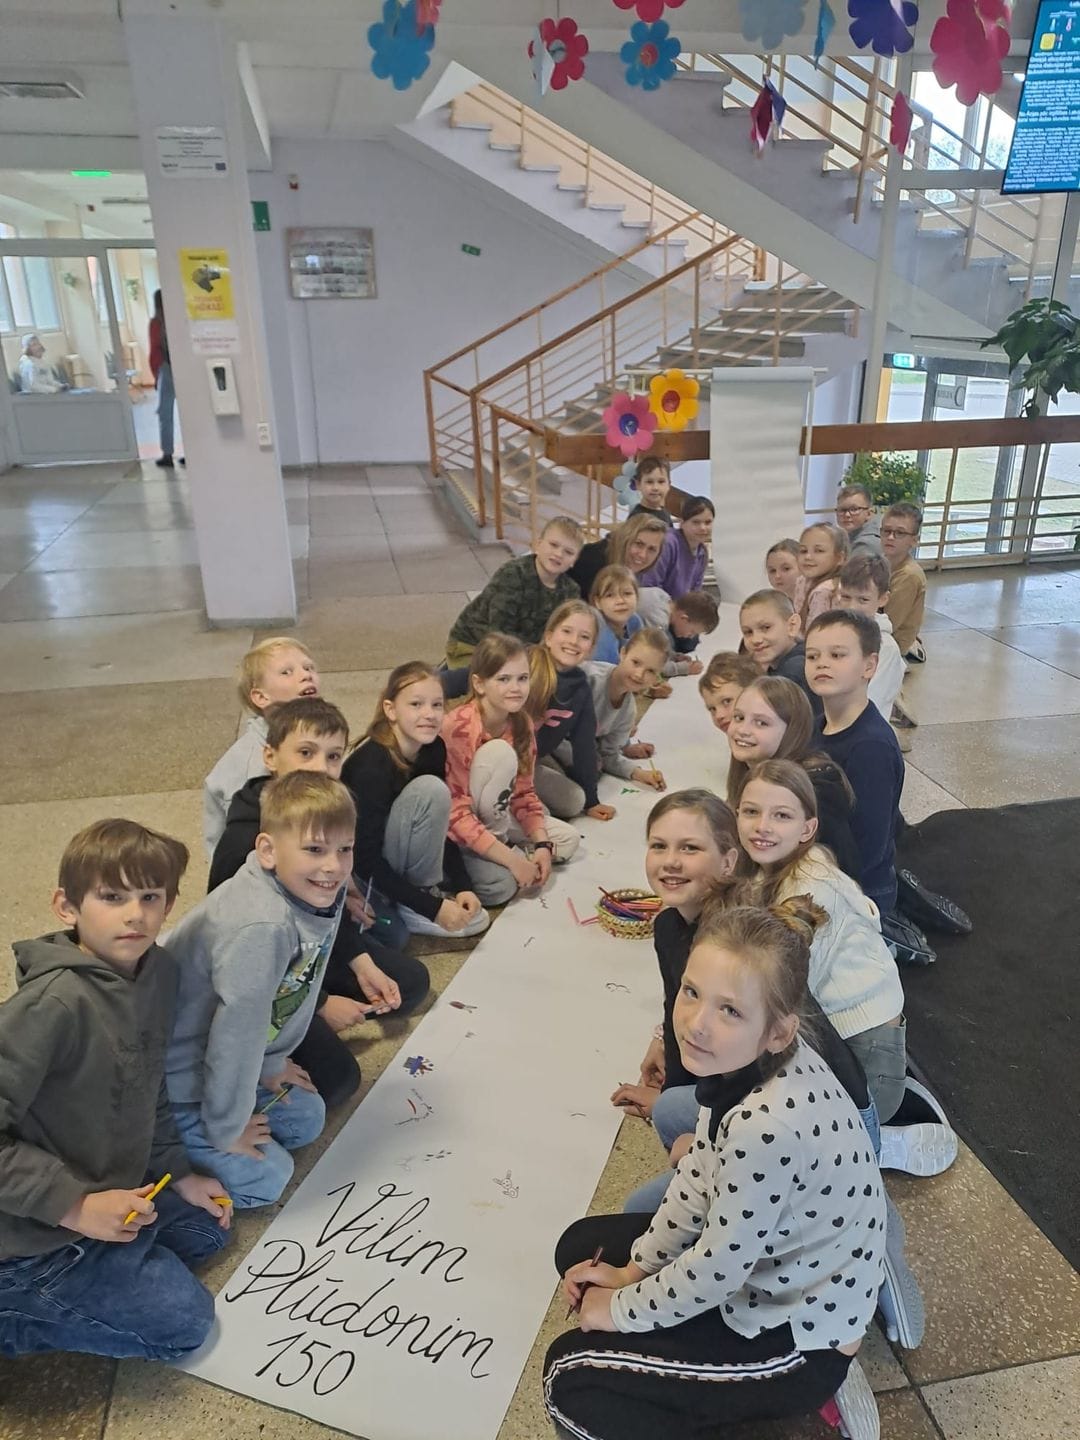 Viļa Plūdoņa 150. dzimšanas dienas zīmē Rīgas Imantas vidusskolā aizritējusi Mākslas nedēļa